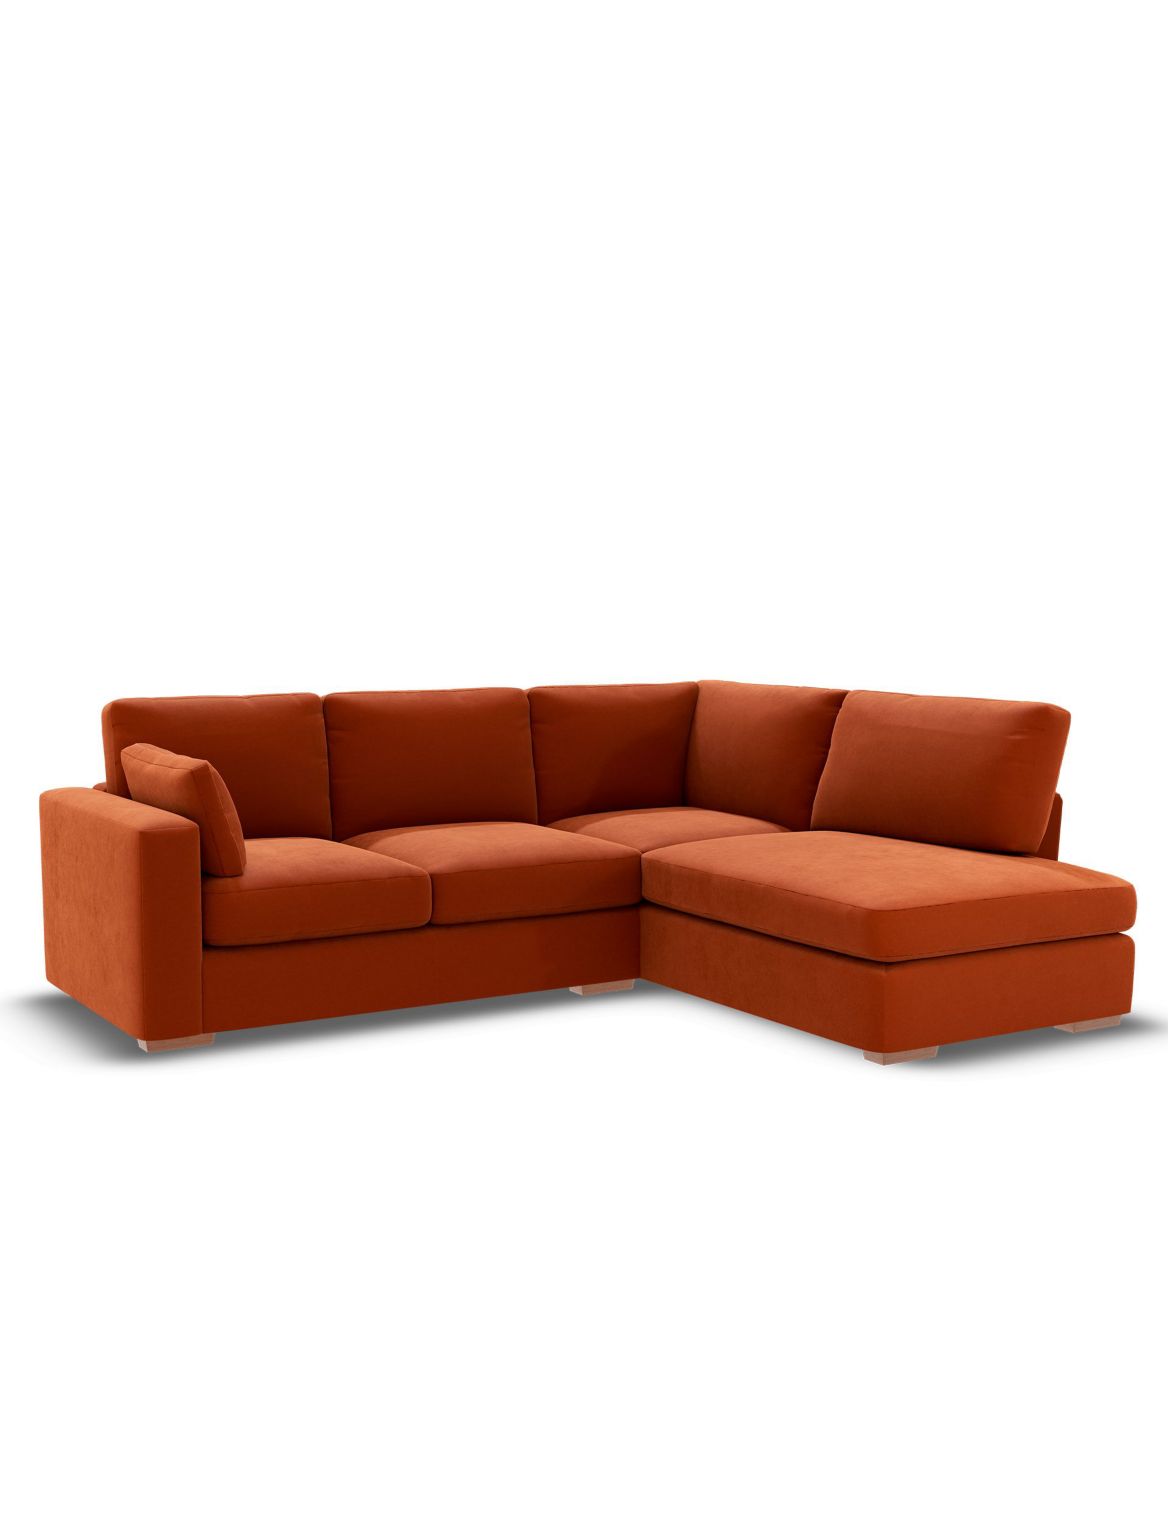 Boston Small Corner Chaise Sofa (Right-Hand) orange